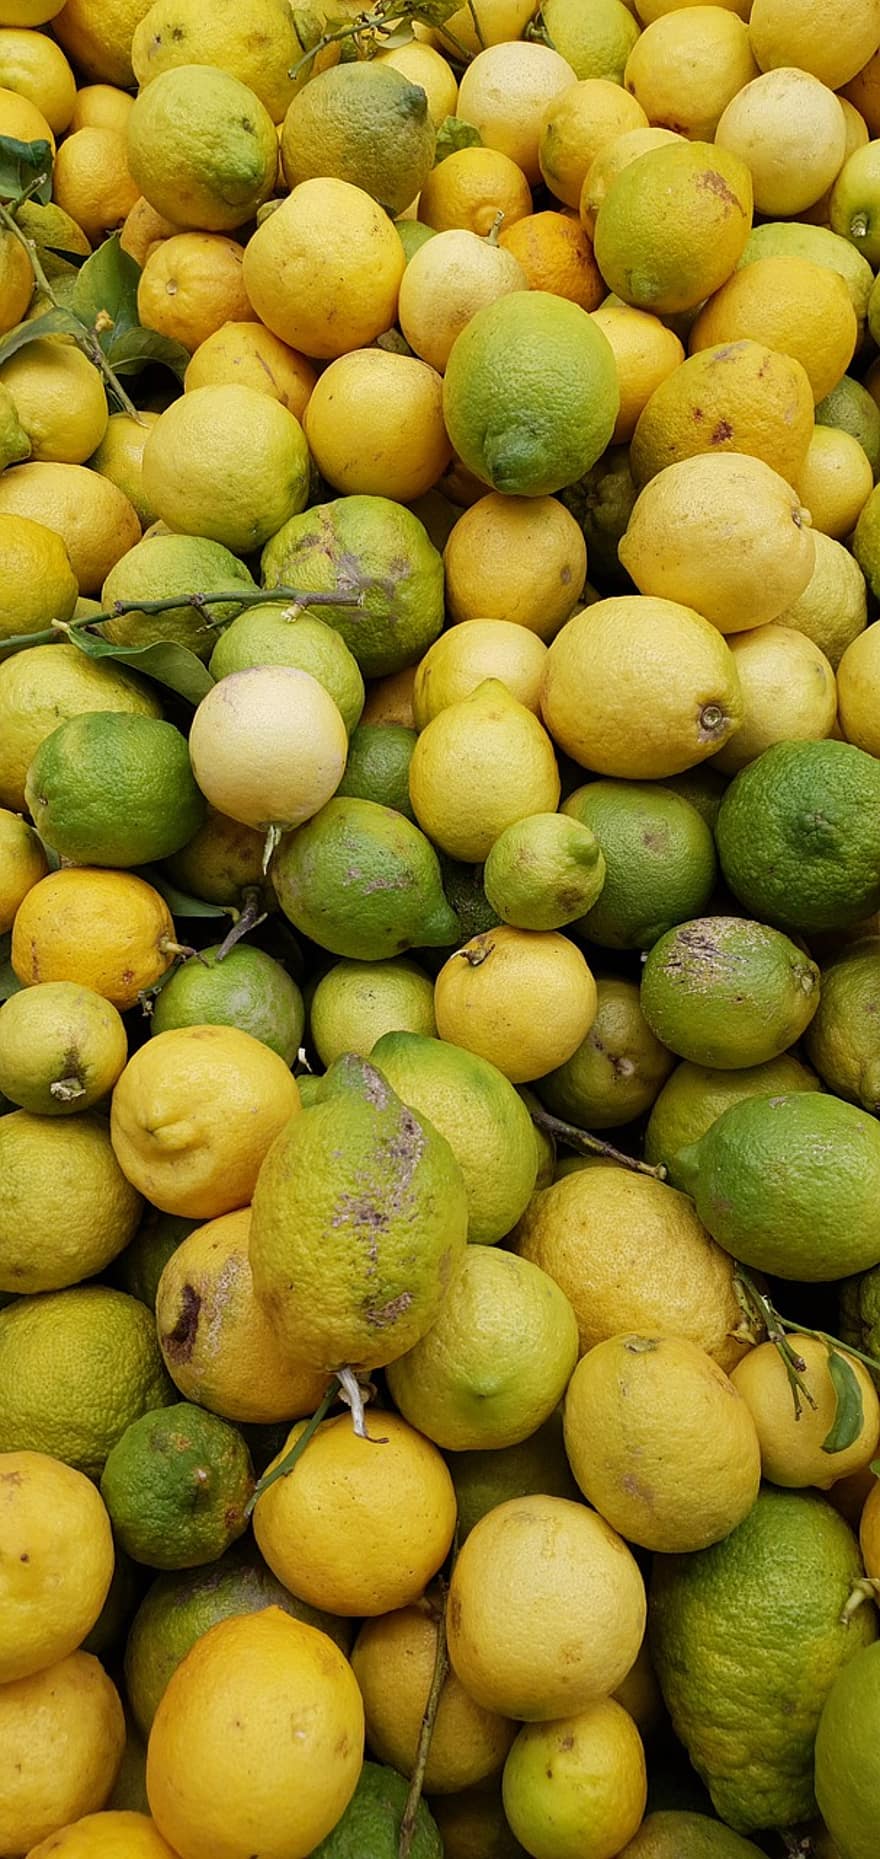 فاكهة ، الحمضيات ، الليمون ، حصاد ، فيتامين ، صحي ، نضارة ، فاكهة حمضية ، طعام ، ليمون ، عضوي